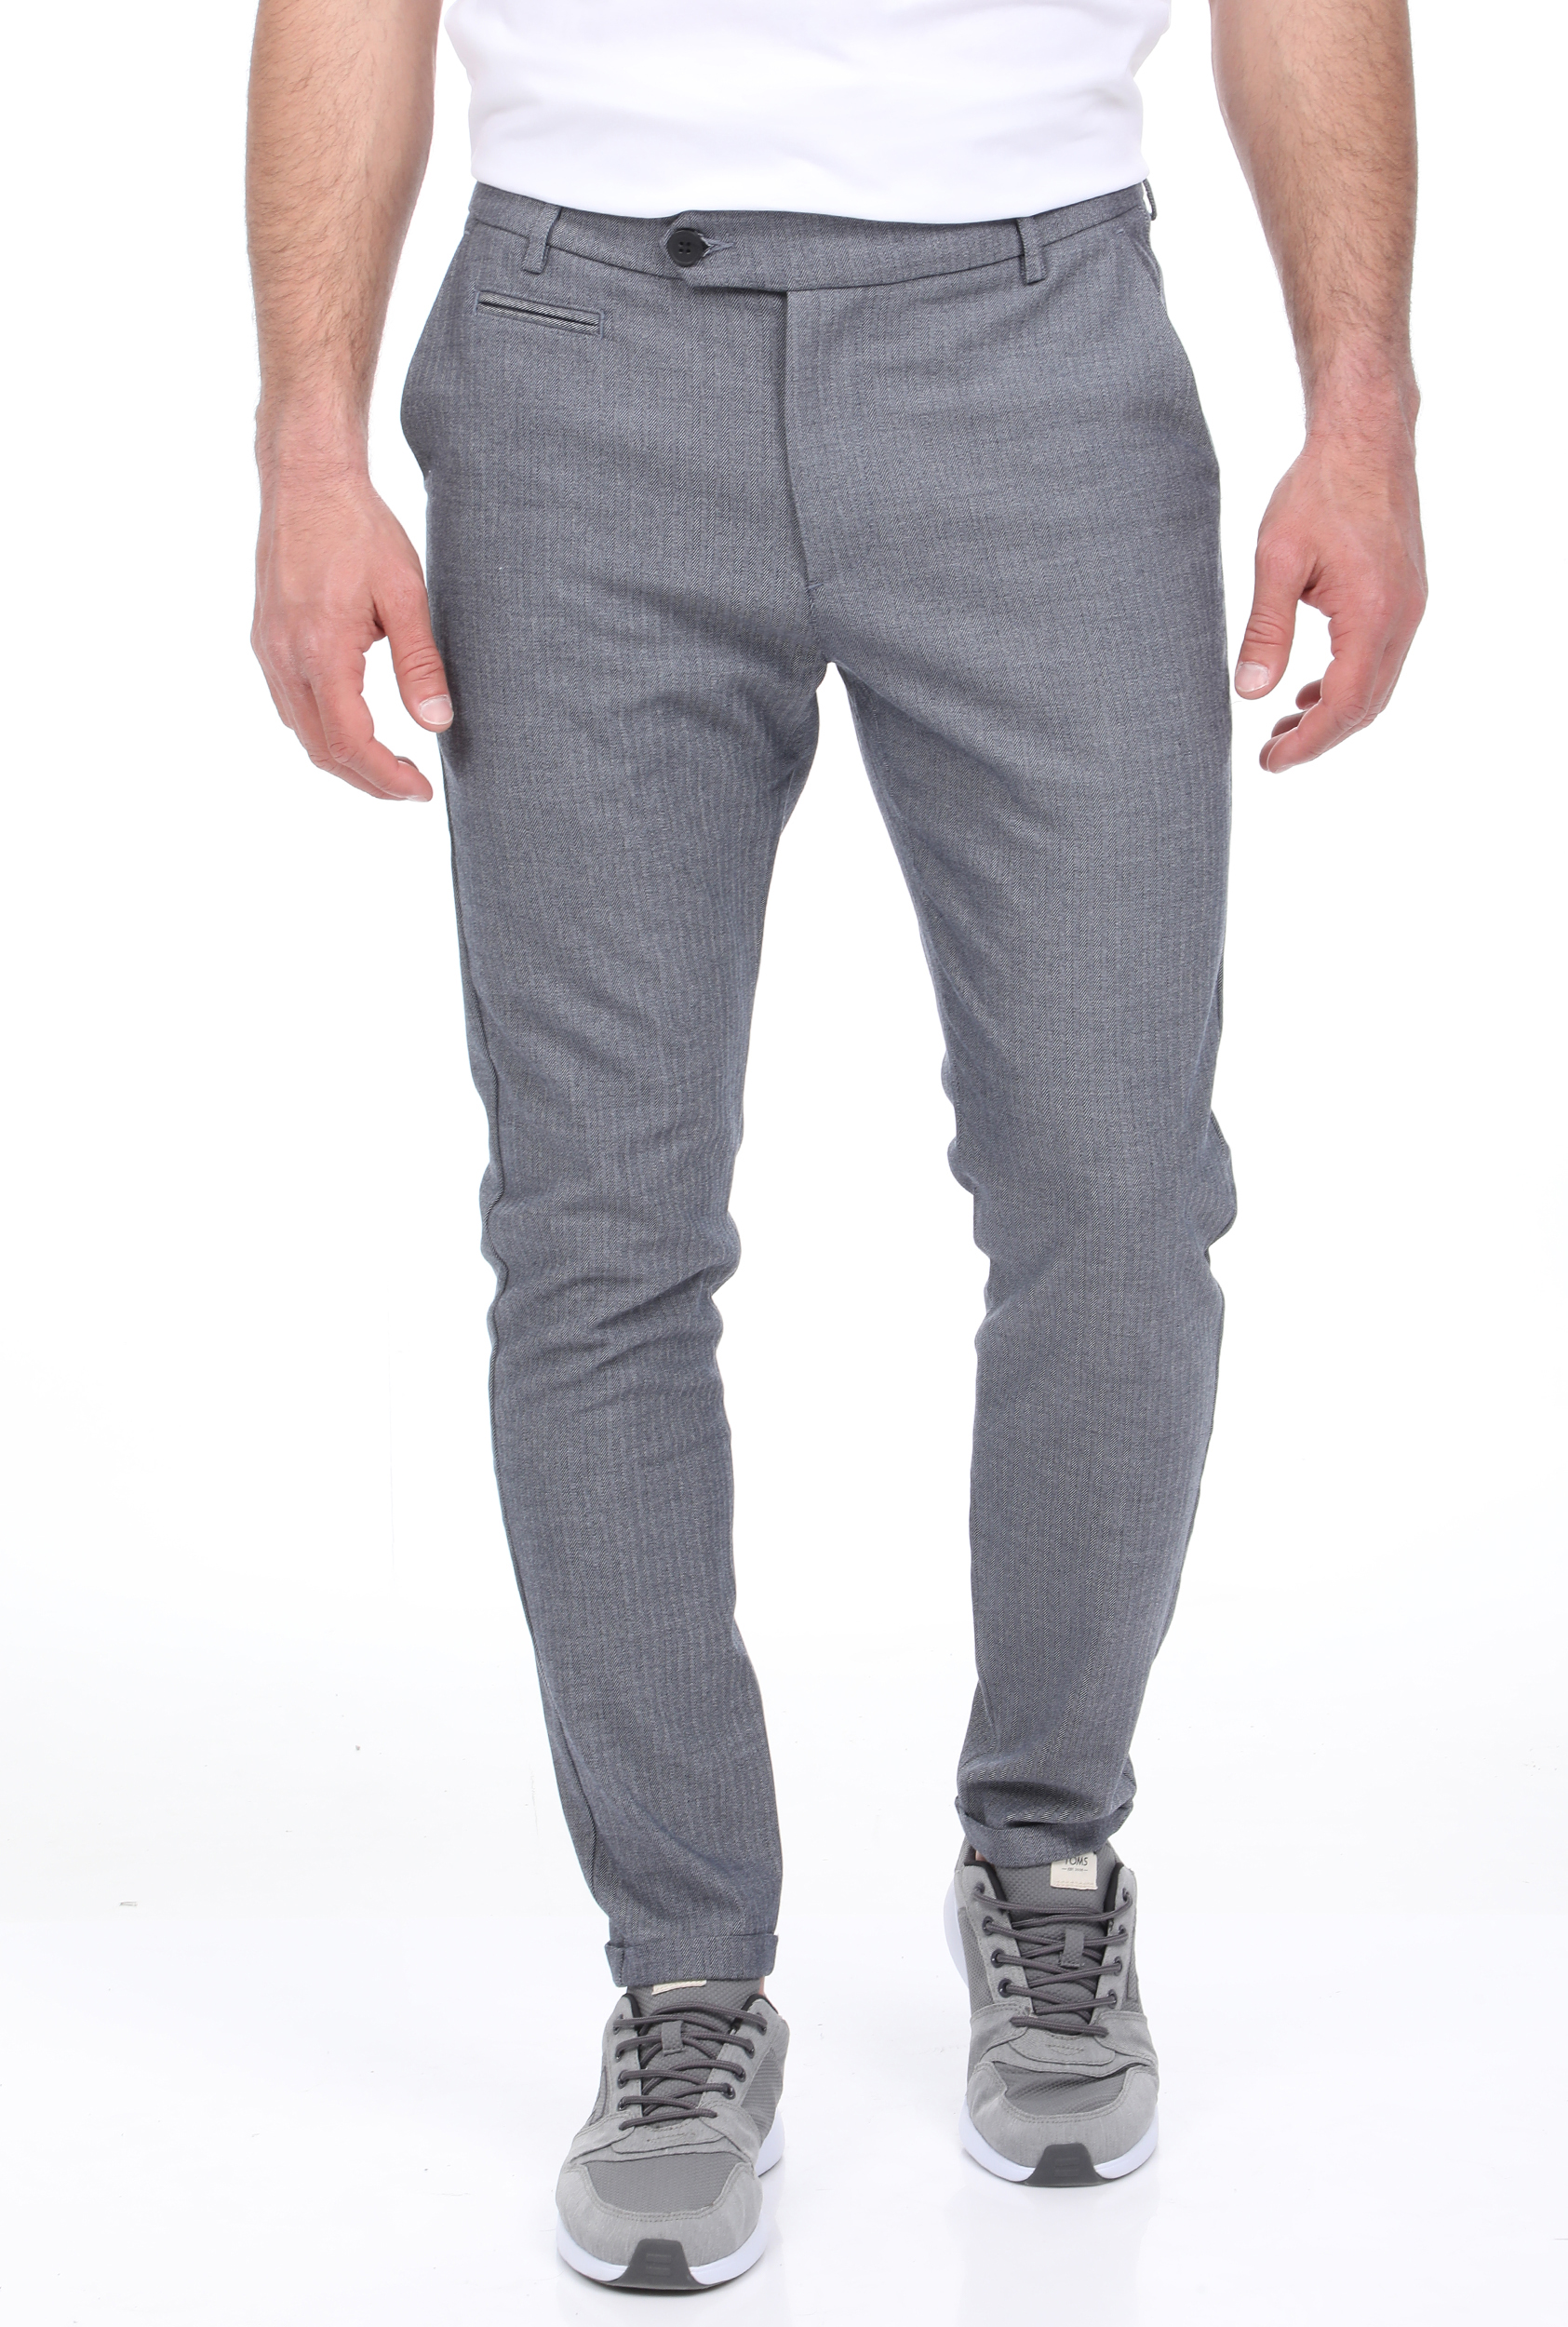 LES DEUX – Ανδρικό παντελόνι LES DEUX Malus Suit Pants μπλε γκρι 1811352.0-1E88